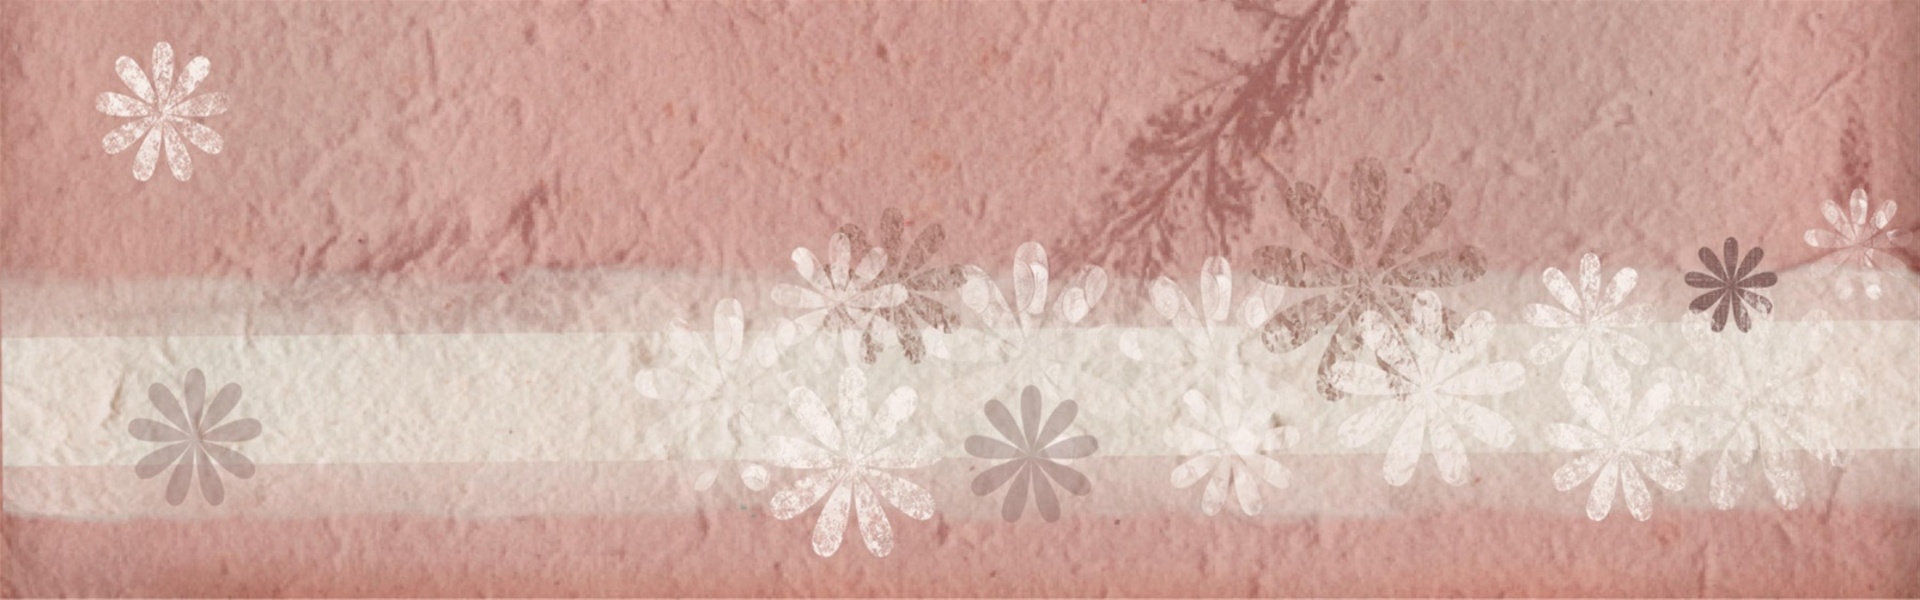 La bandera del Web romántico papel rosa